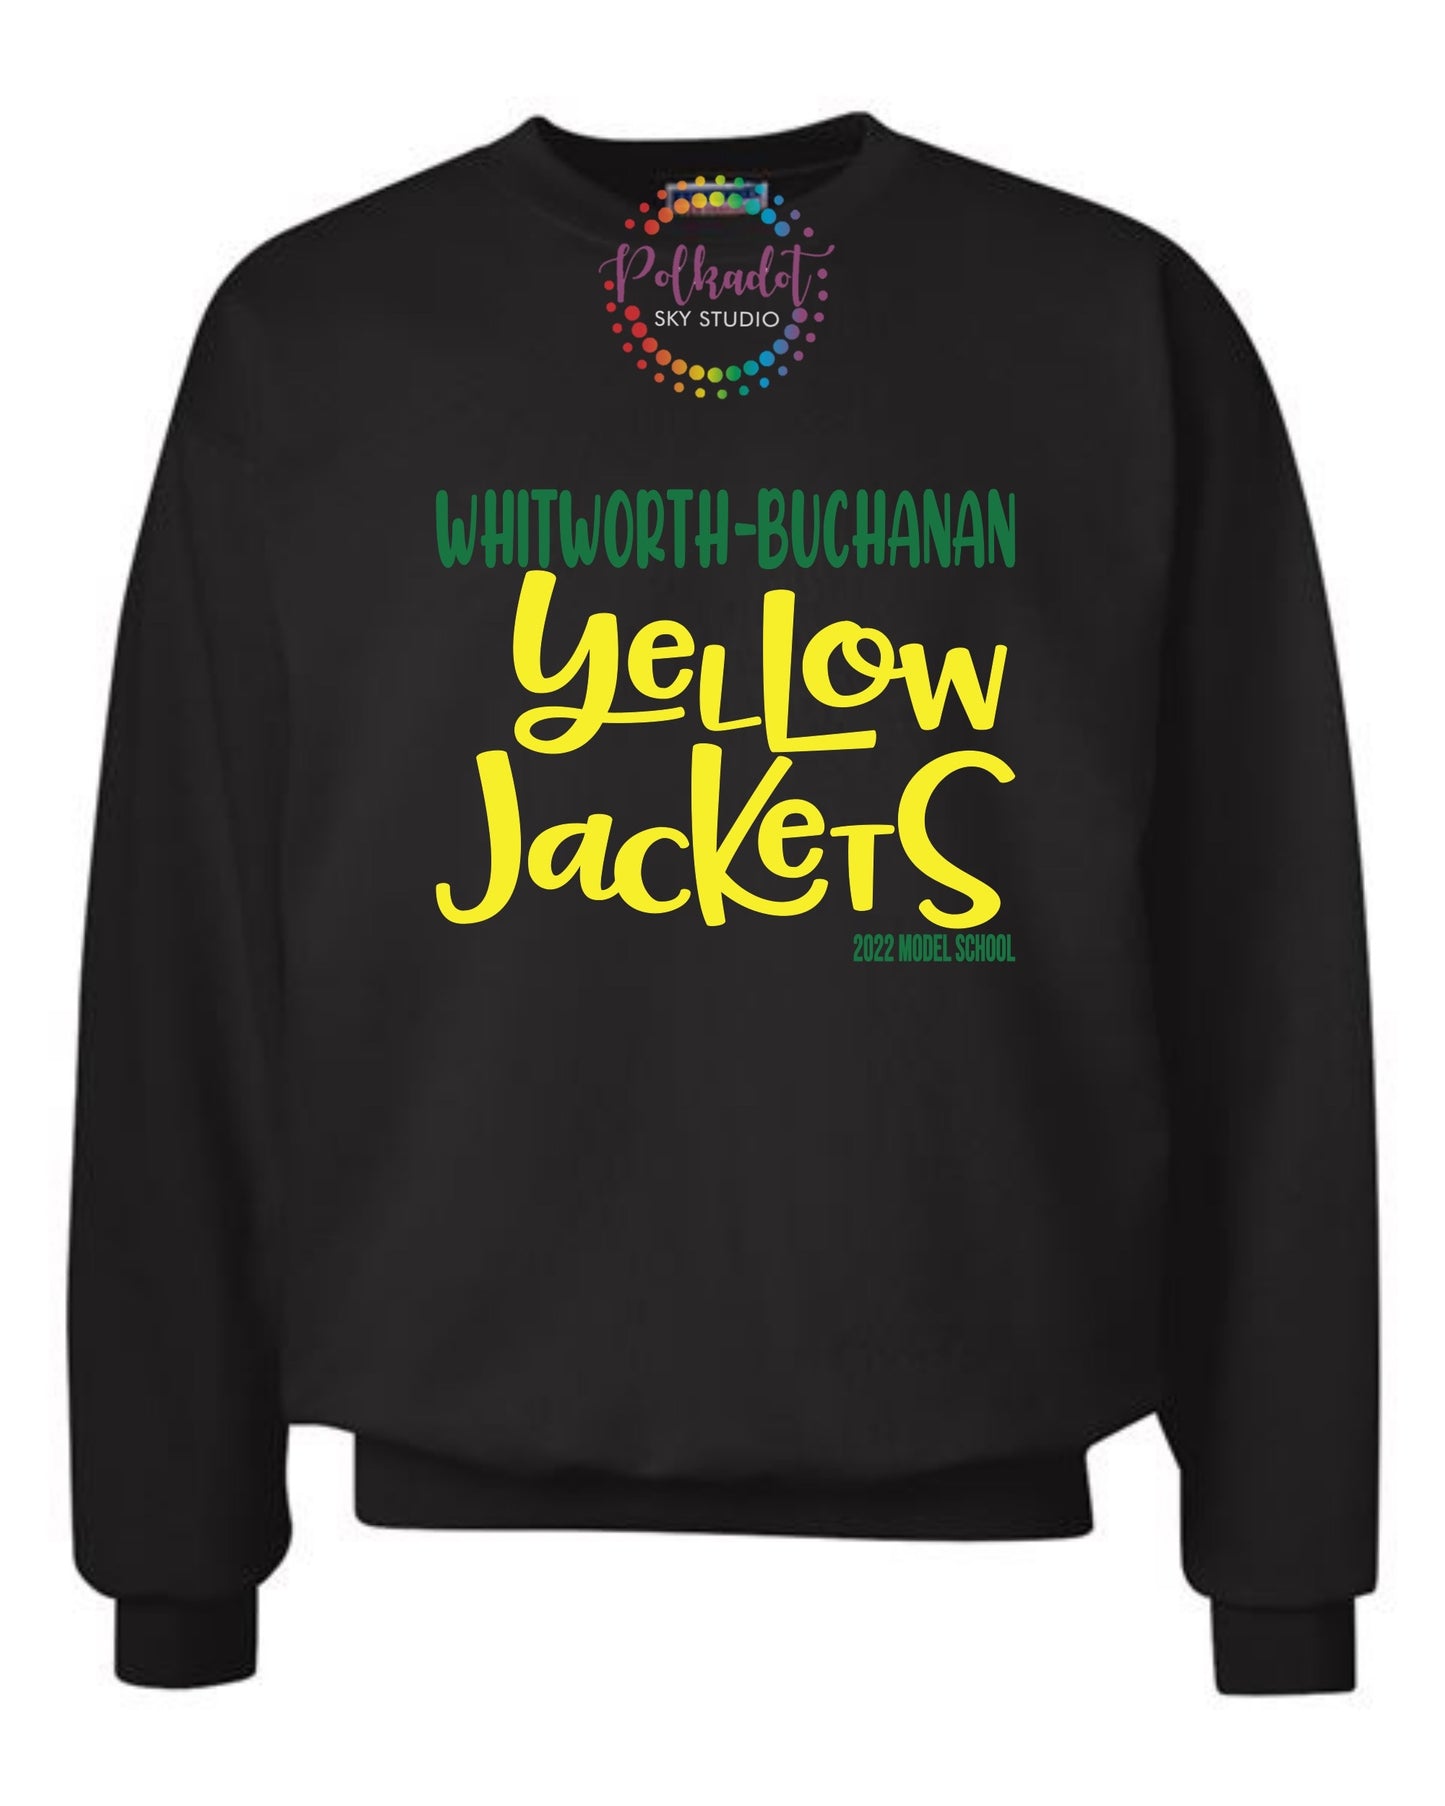 Yellow Jackets 2022 Model School Sweatshirt